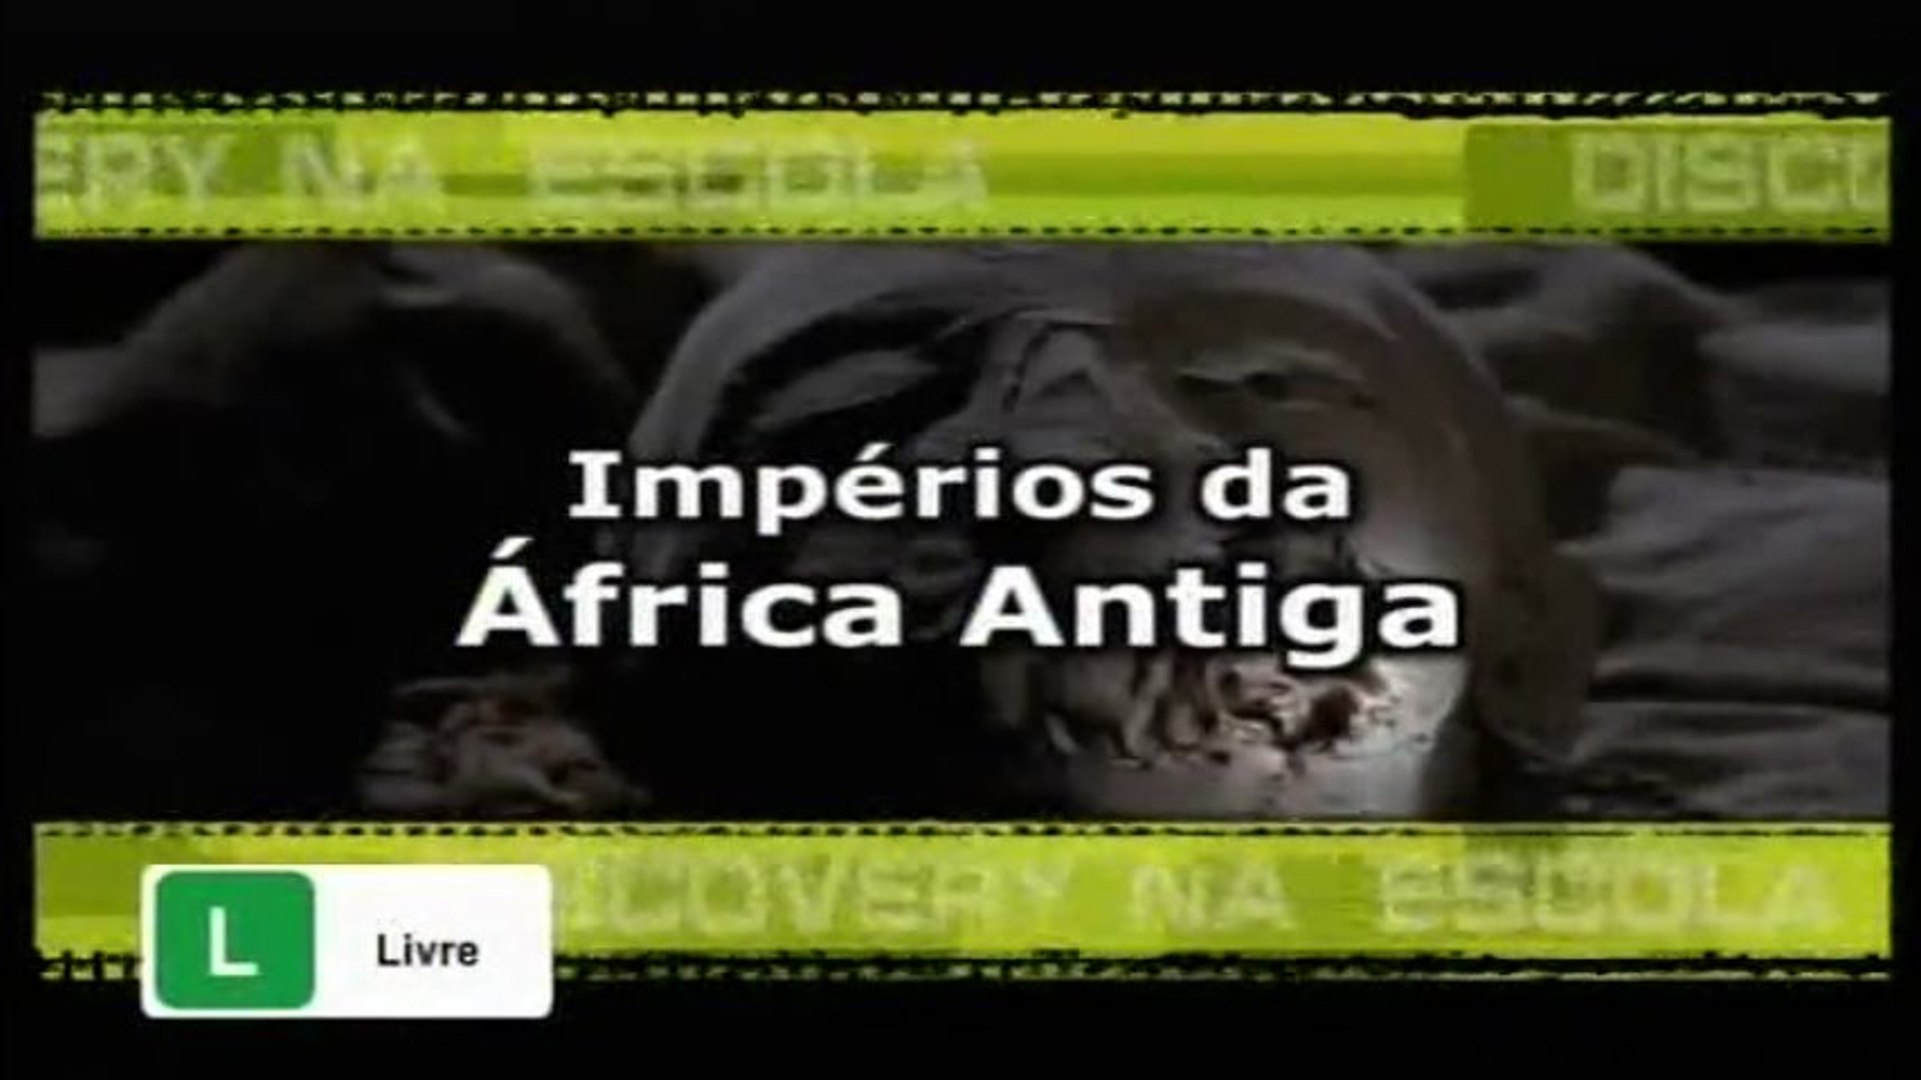 Discovery na Escola - Impérios da África Antiga [Discovery Channel]